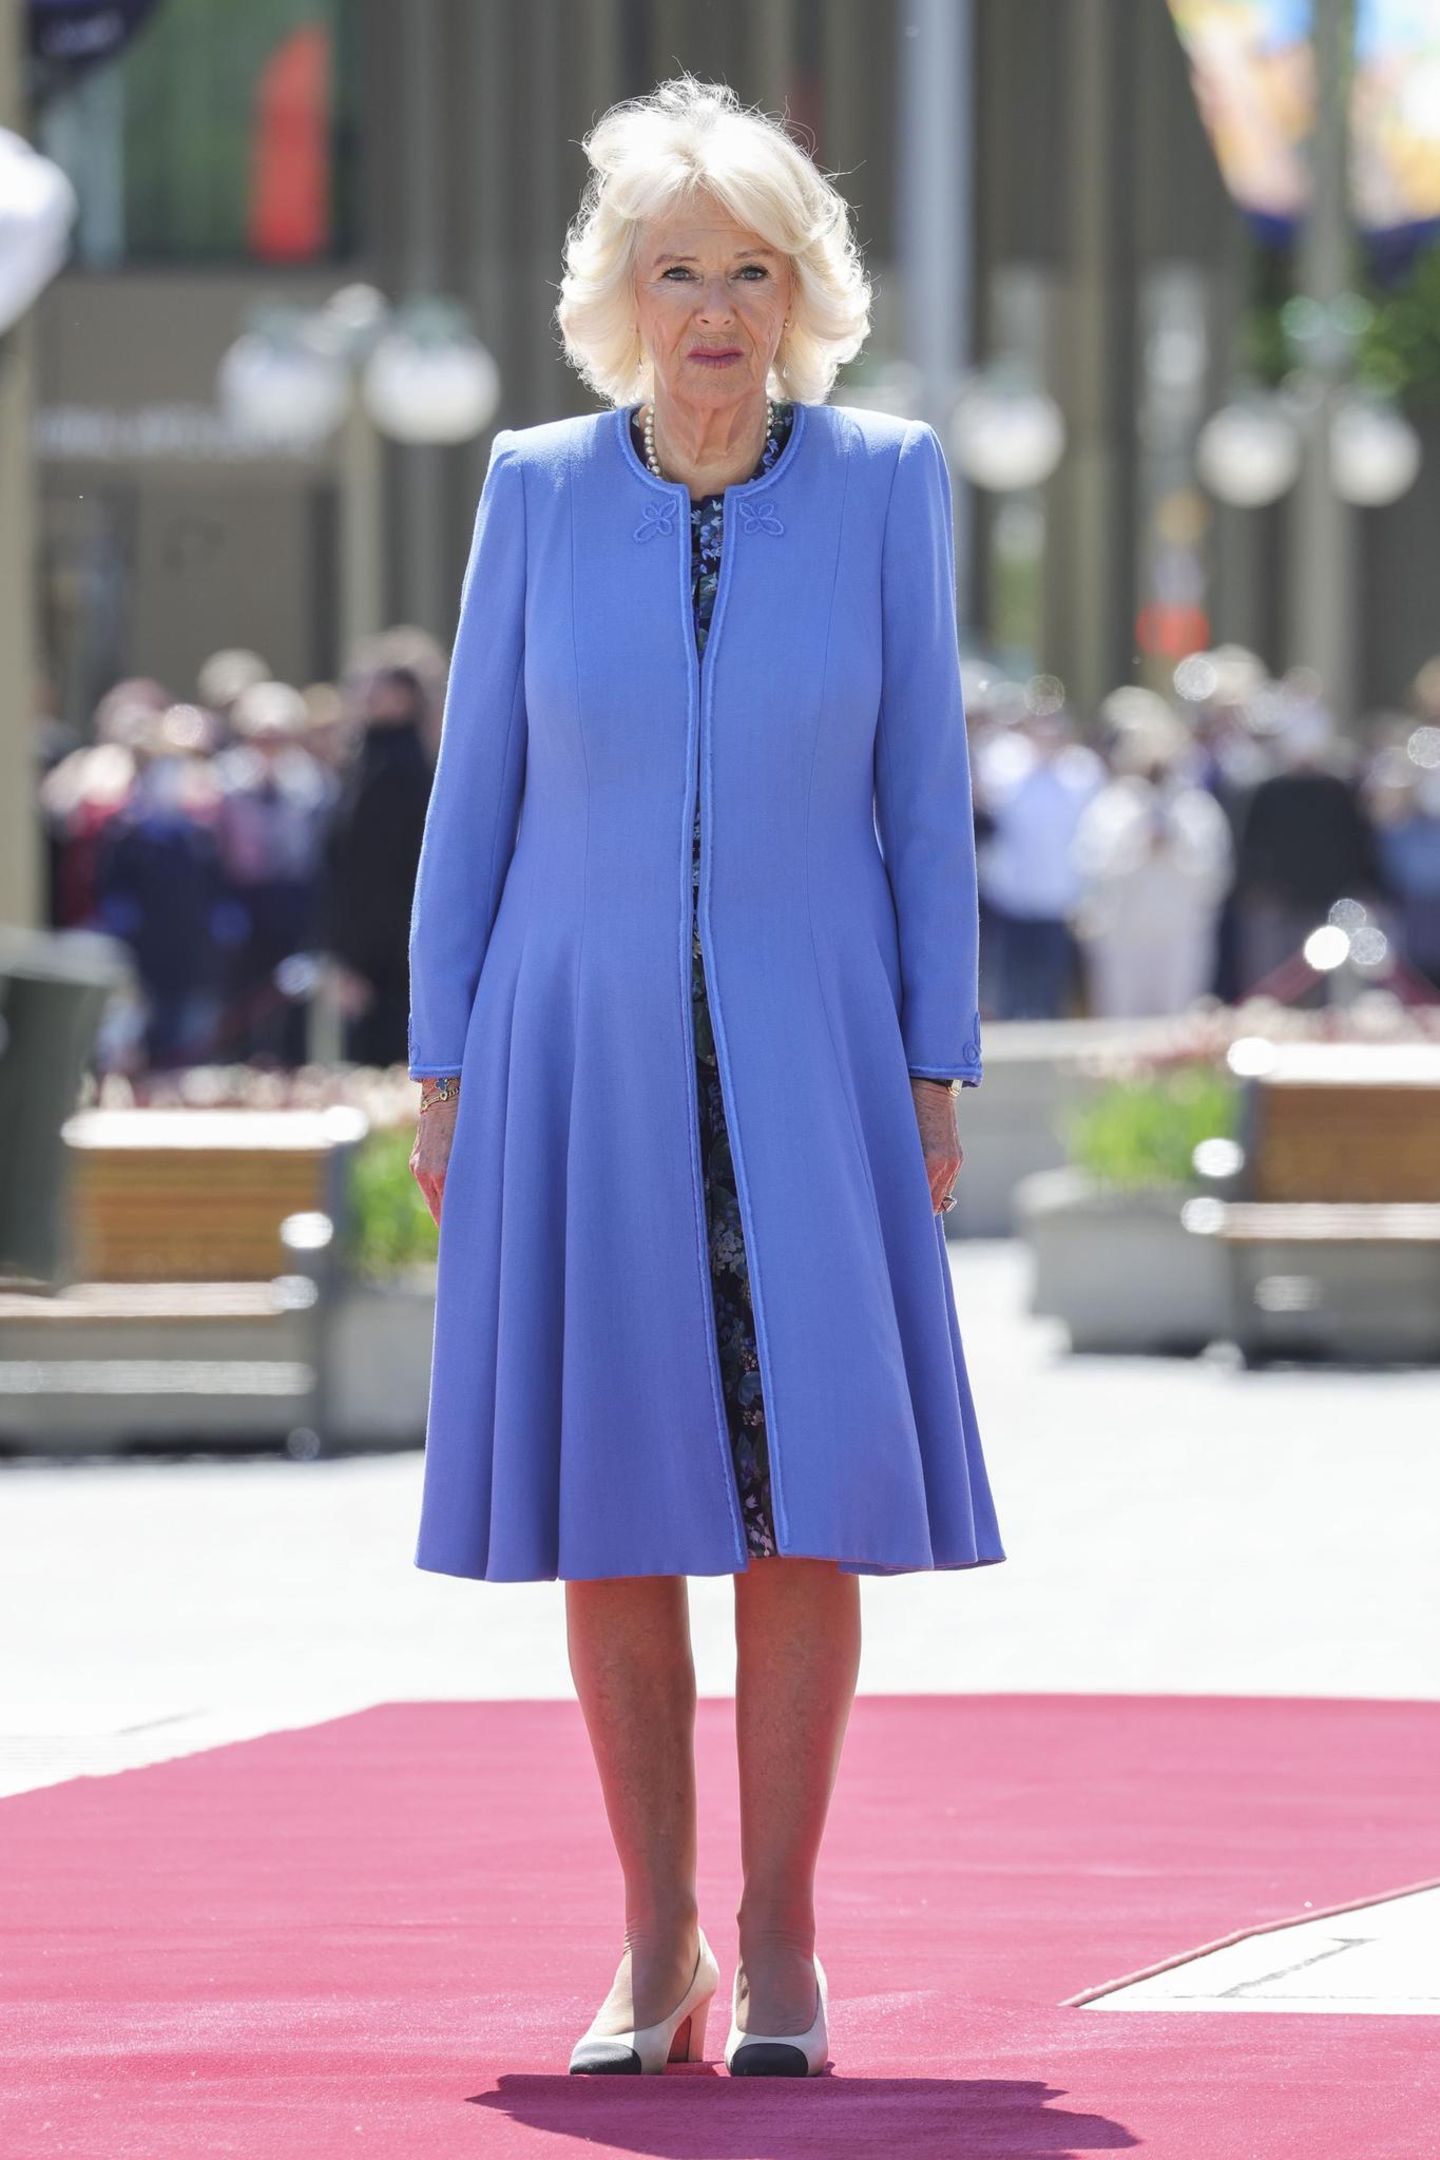 Passender geht es wohl kaum. Zu ihren strahlenden Augen und hellen Haaren trägt Königin Camilla einen leuchtend blauen Mantel. Was natürlich nicht fehlen darf: ihre Perlenkette.